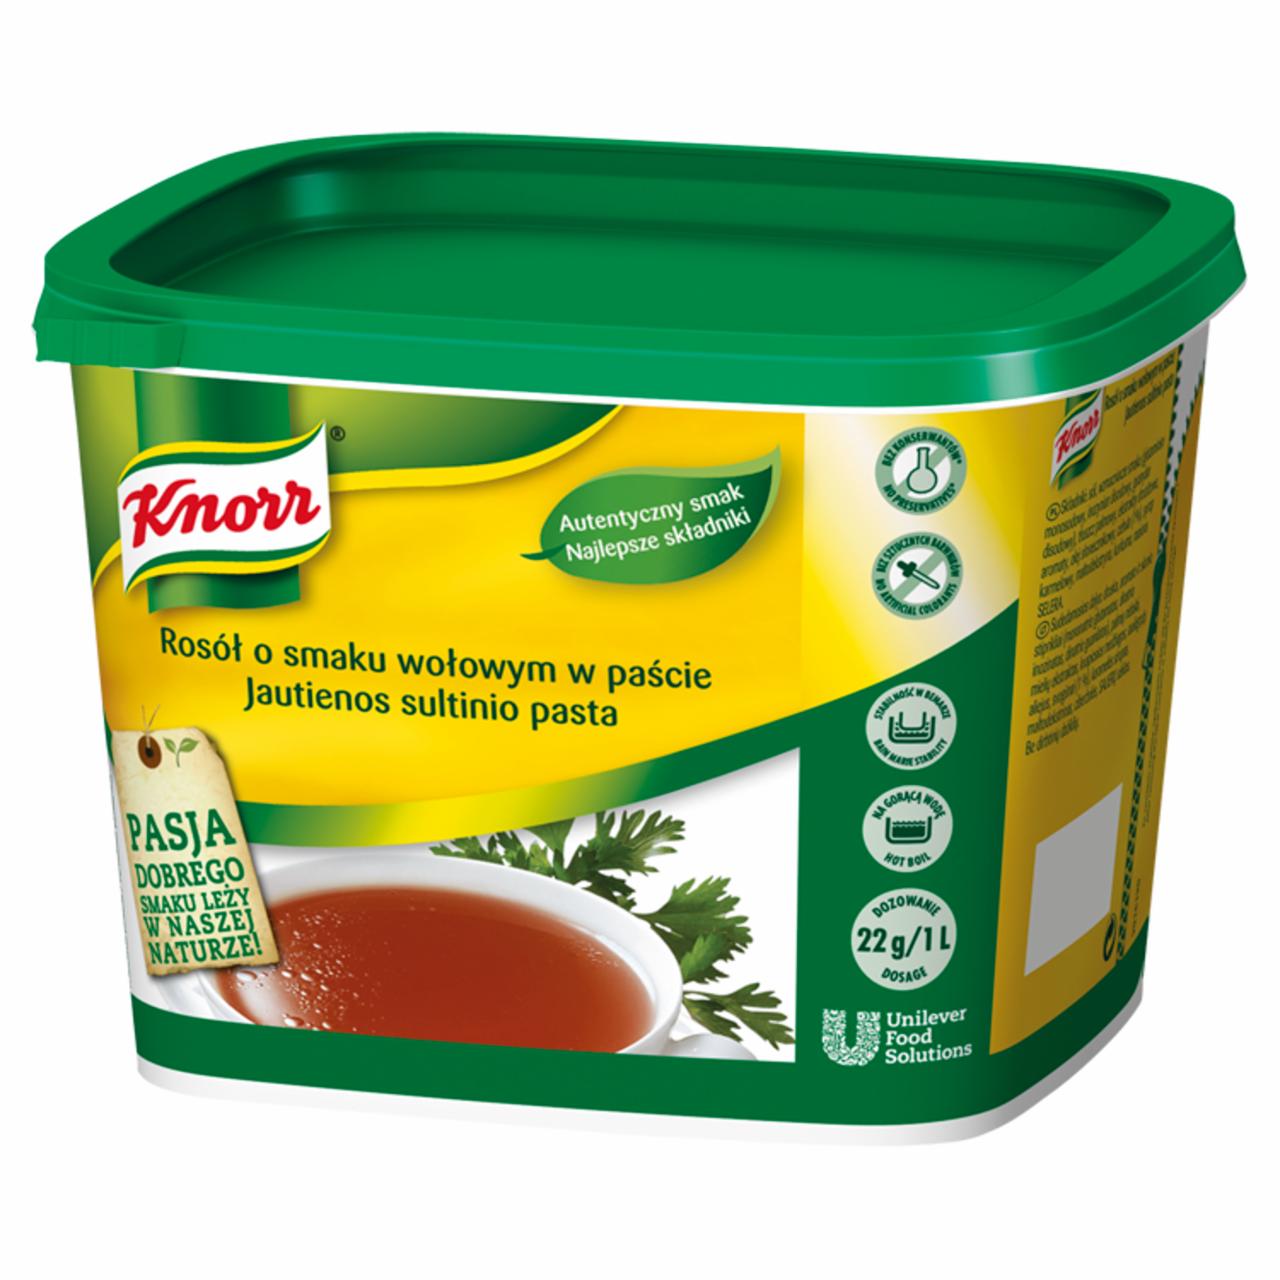 Zdjęcia - Rosół o smaku wołowym w paście Knorr